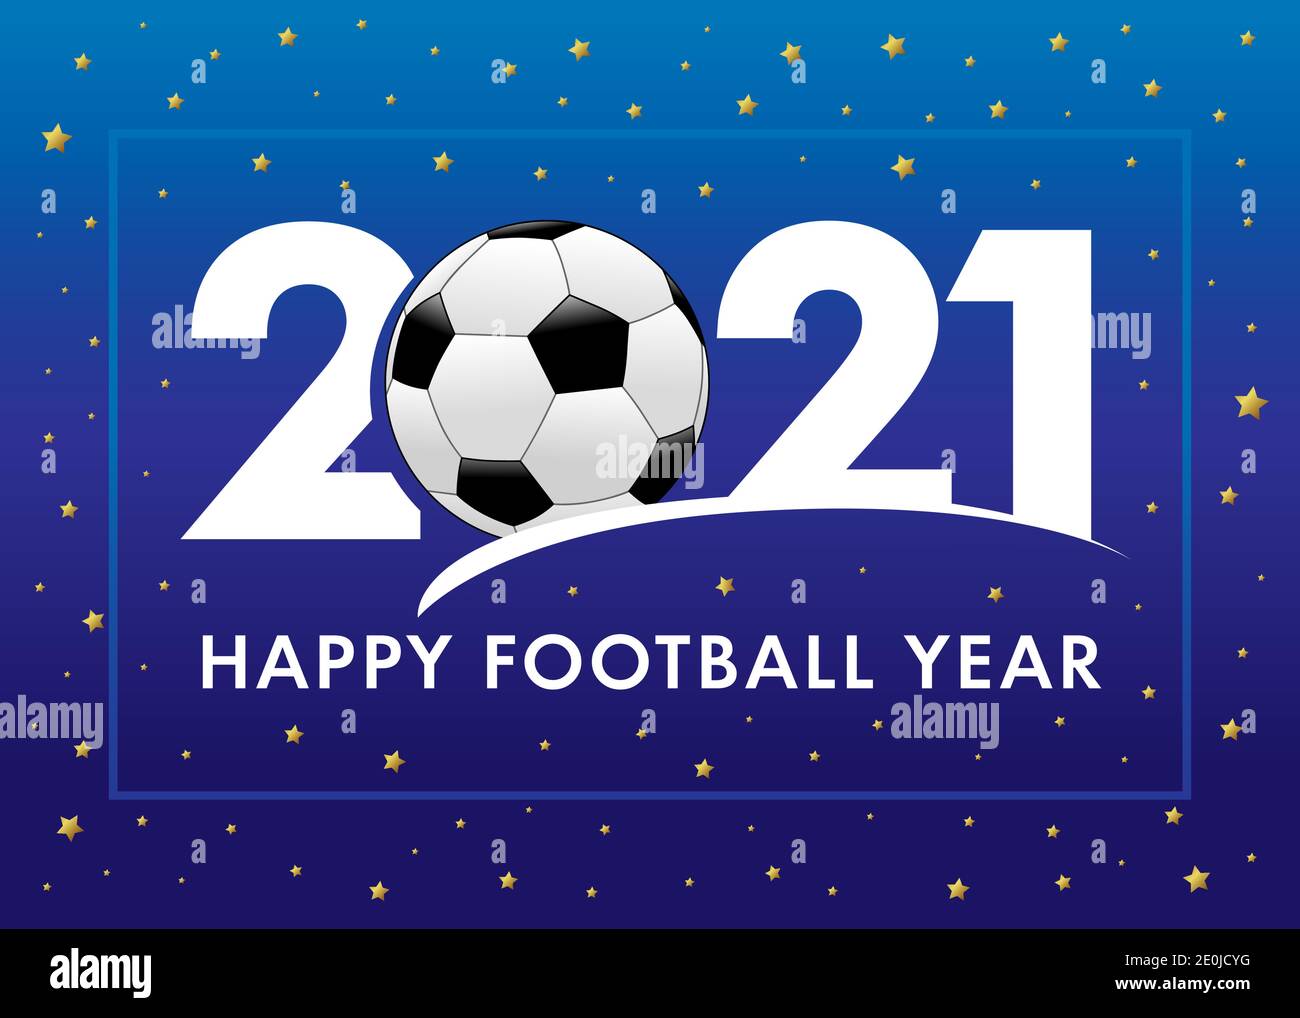 Bonne année du football 2021 avec texte et ballon de football sur fond bleu. Illustration vectorielle Merry Christmas avec 2, boule et 21 chiffres, carte d'invitation Illustration de Vecteur